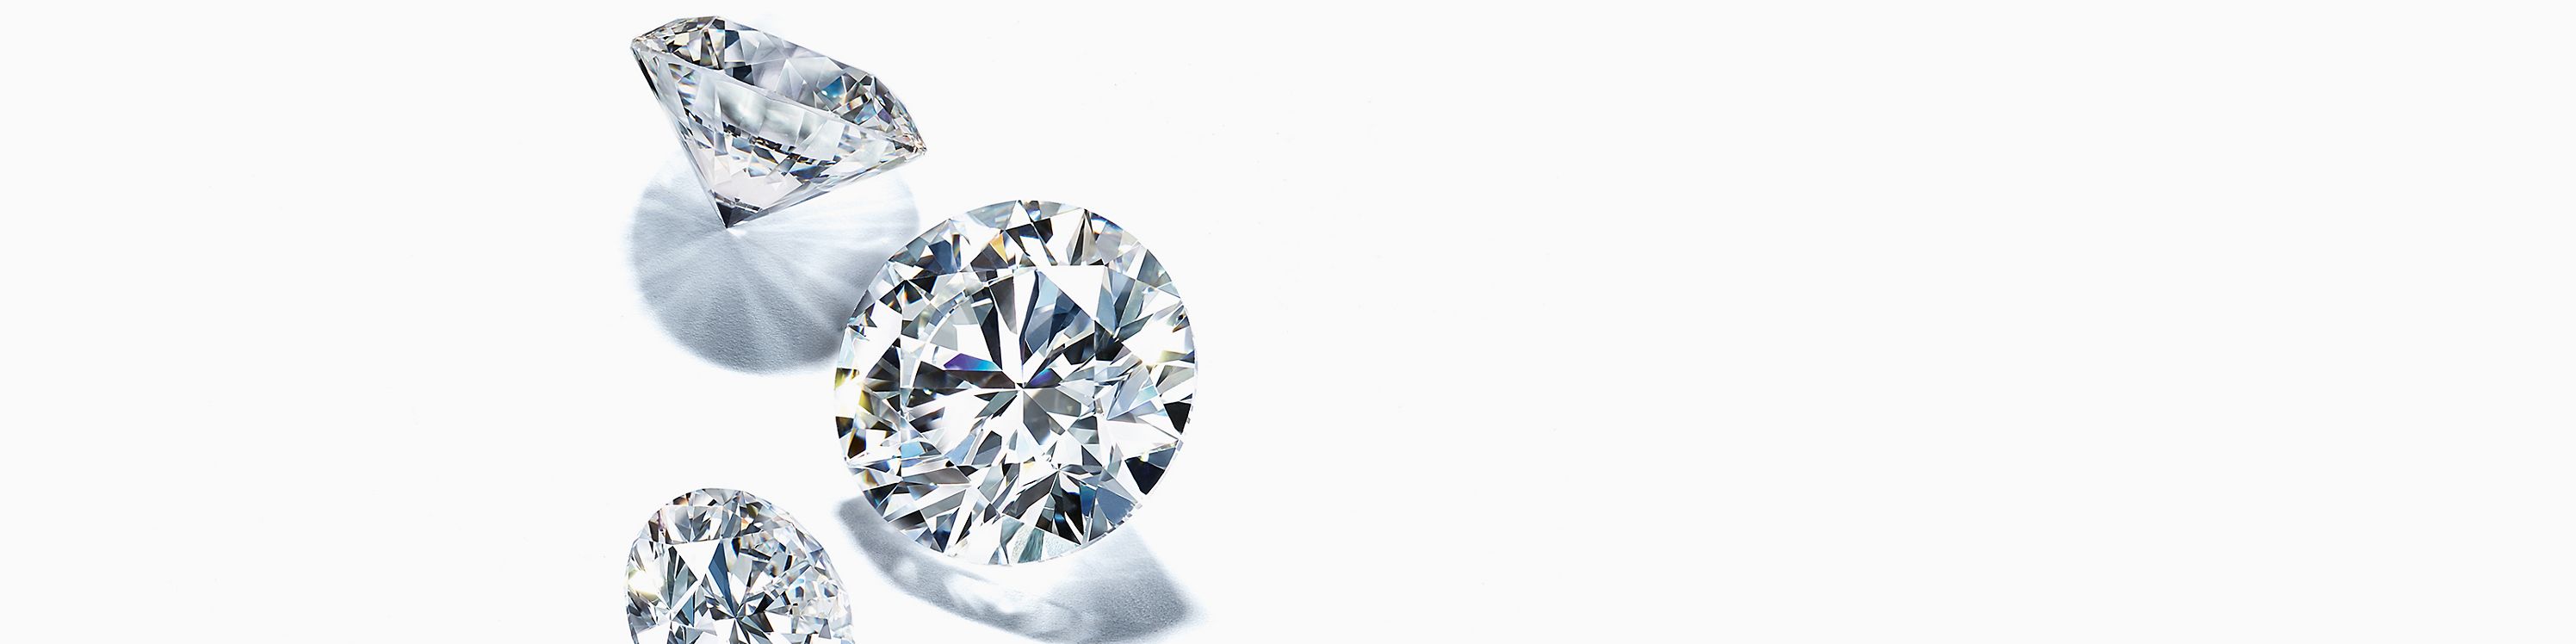 Ce qu’est la taille d’un diamant